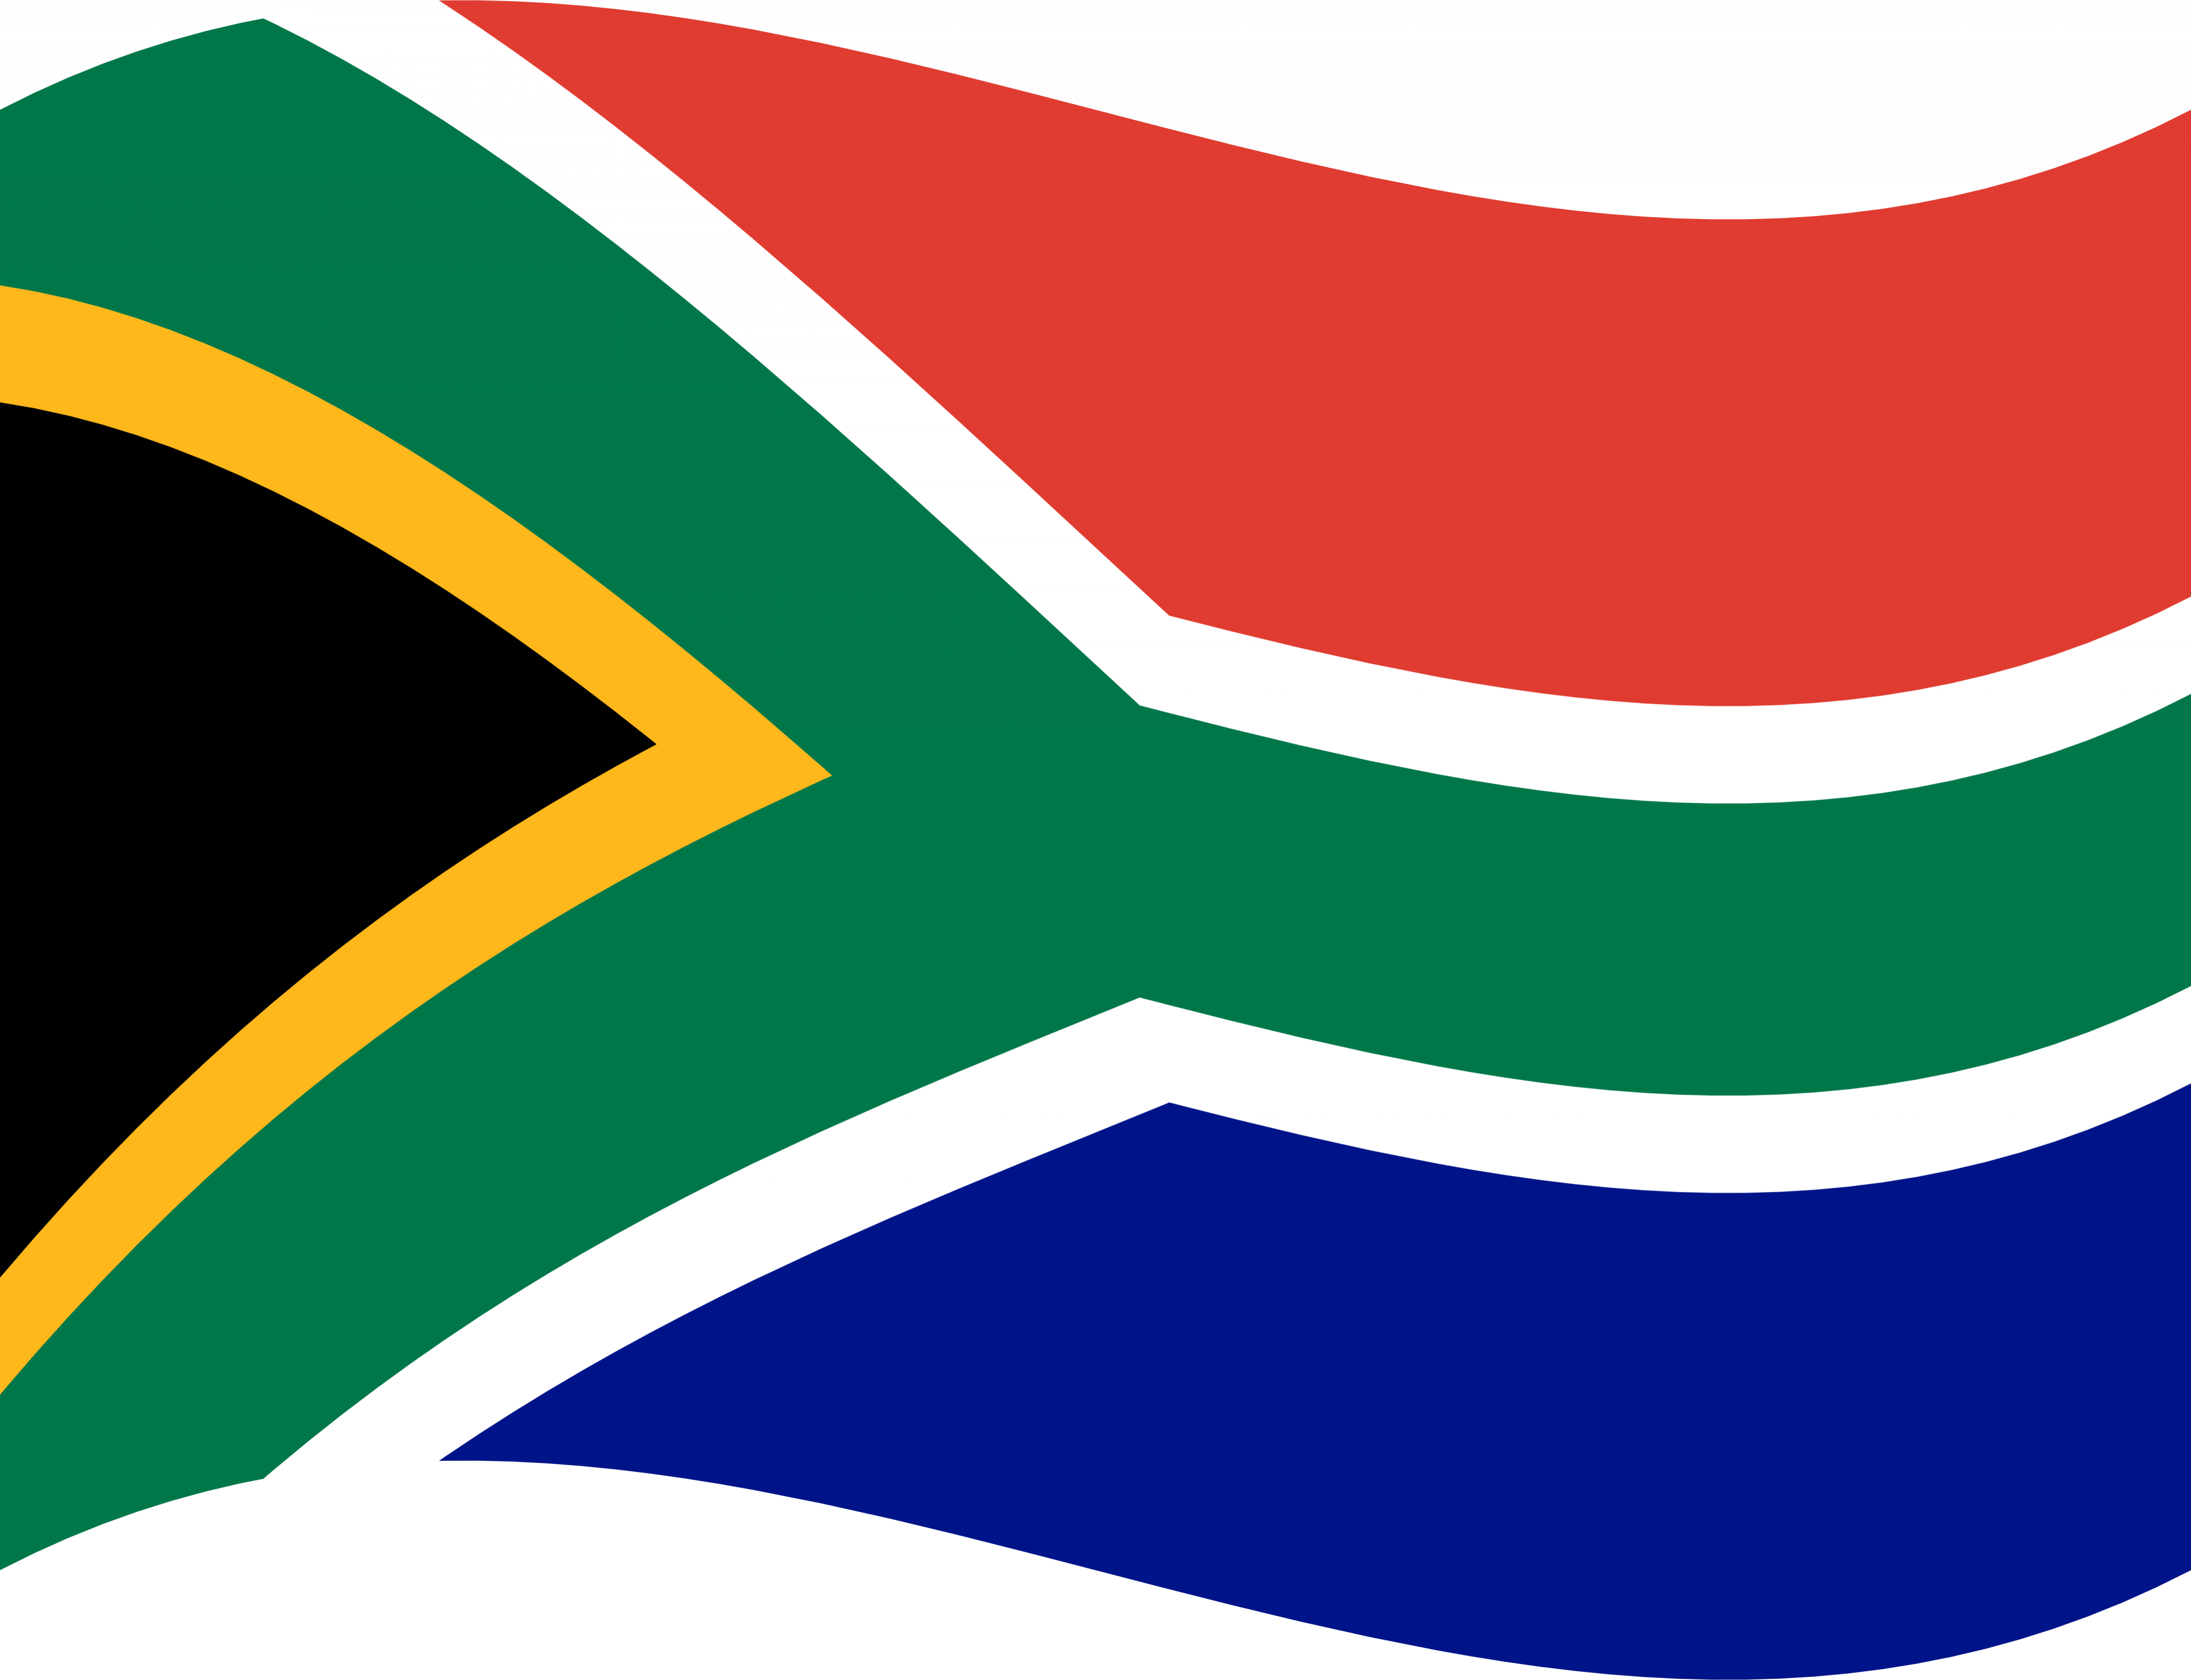 عکس پرچم آفریقای جنوبی